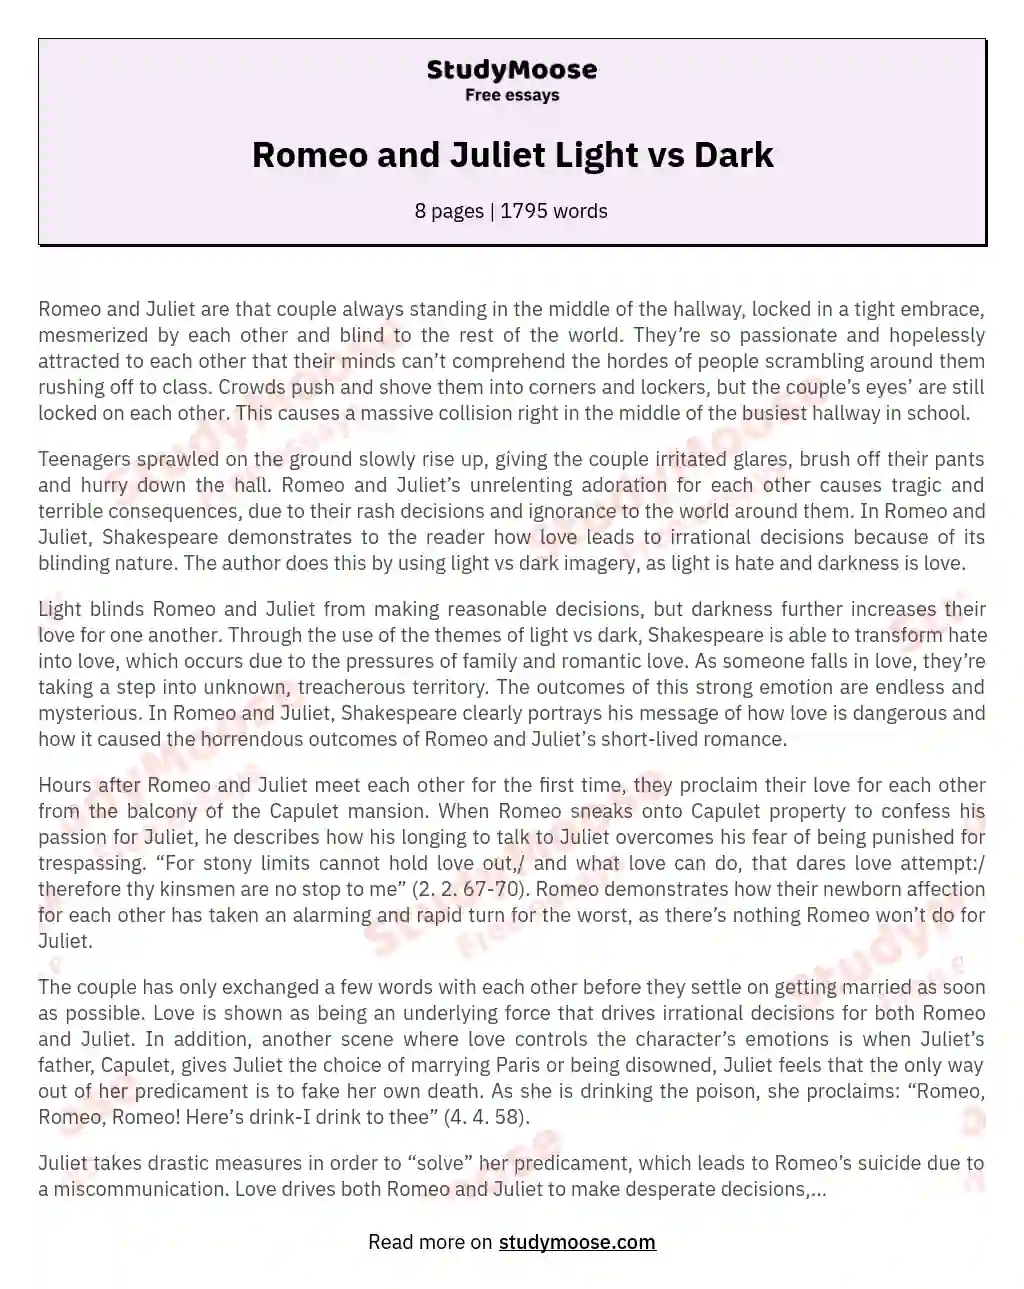 Romeo and Juliet Light vs Dark essay